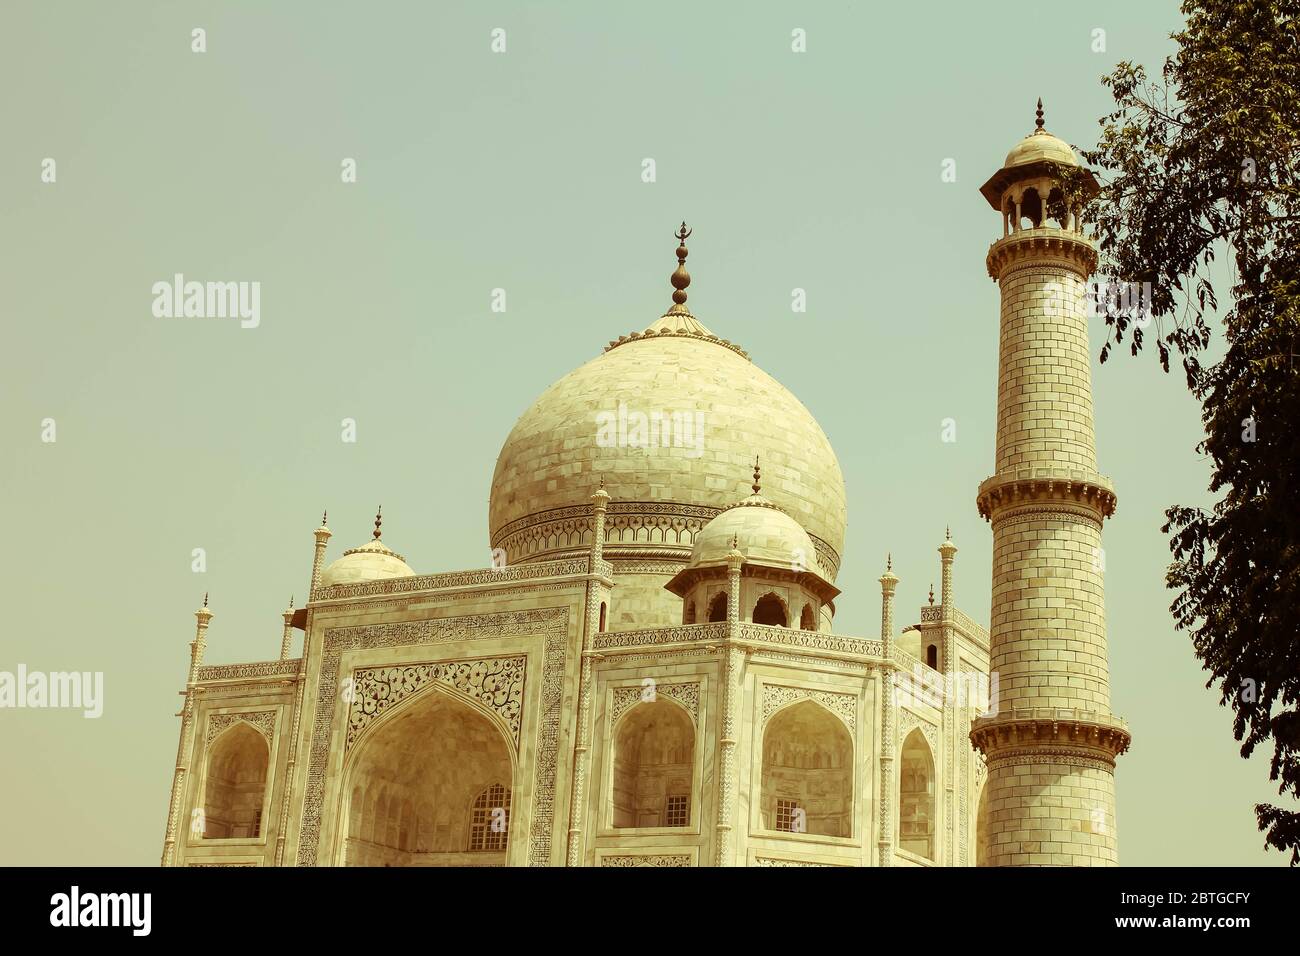 Das Taj Mahal ist ein weißes Marmordenkmal, das in der Stadt Agra, Indien gelegen ist. Taj Mahal ist eines der sieben Weltwunder - Retro-Stil, Stockfoto